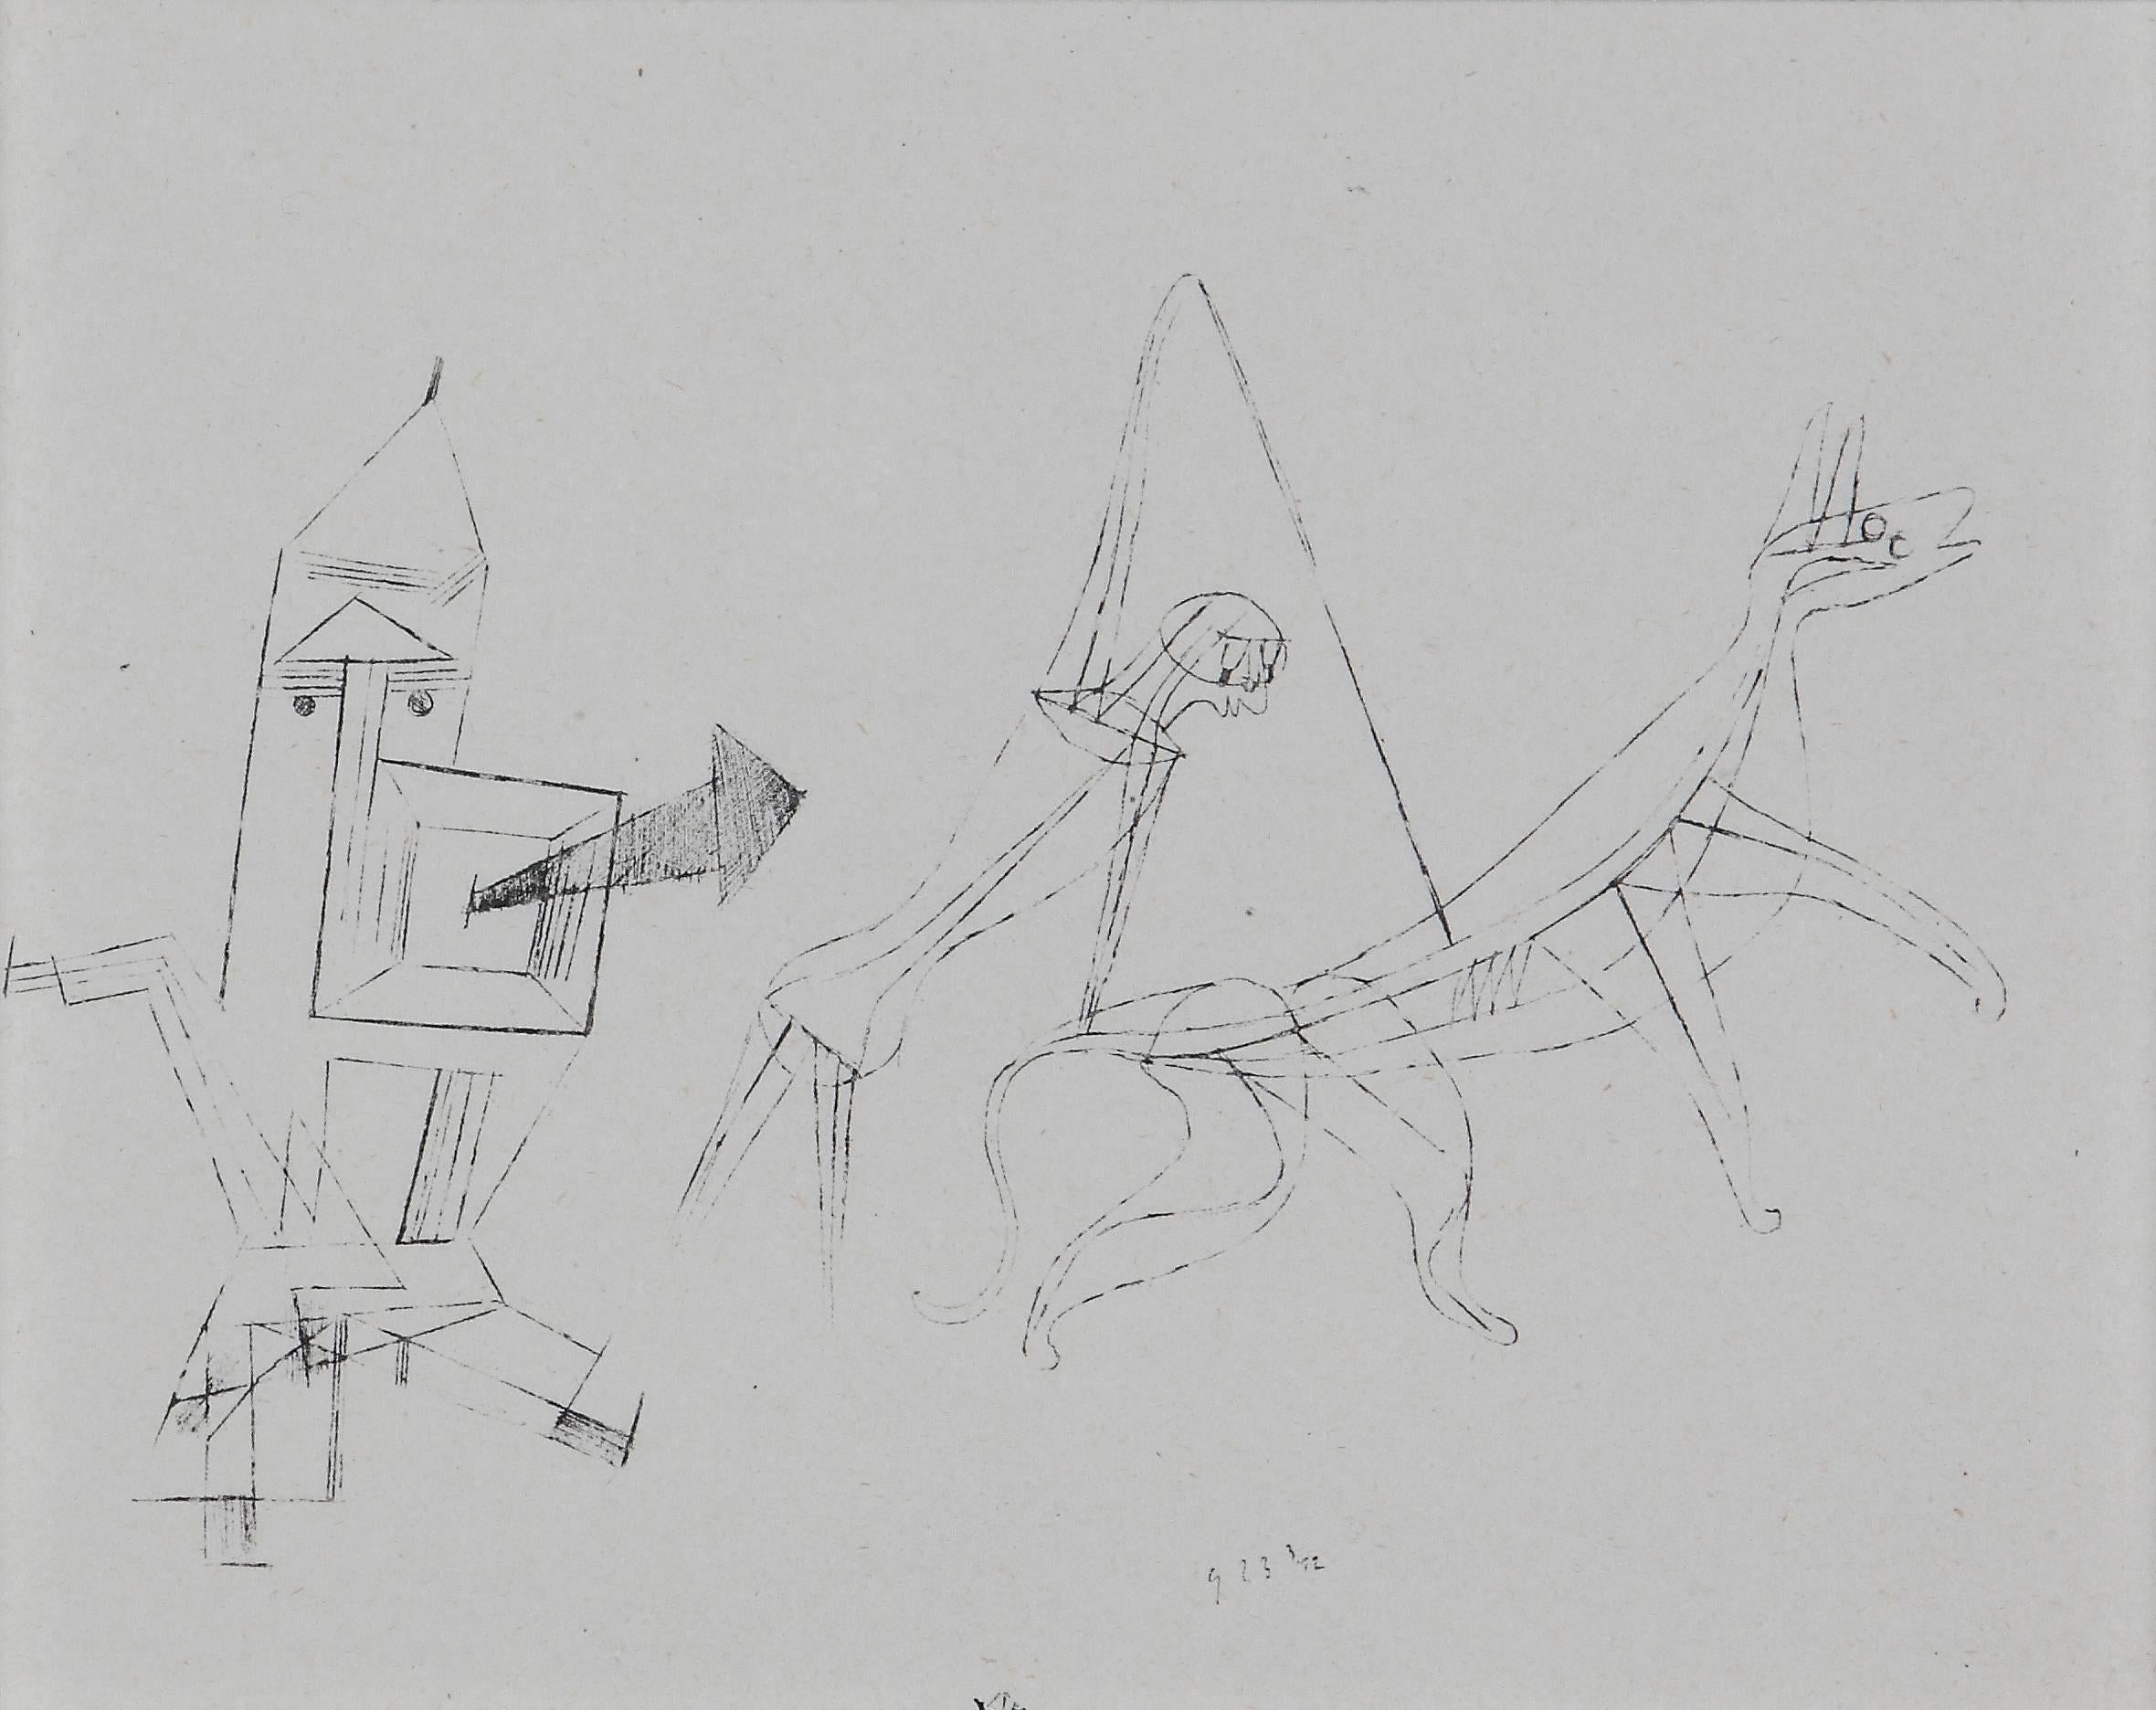 Helio-Radierung auf Büttenpapier, 1923 von Paul Klee. Die Signatur ist unten in der Mitte aufgedruckt: Klee
Aus dem Bestand Paul Klee, Handzeichnungen 1921-1930; hier Nr. 15
Bild: 5.55 x 7.48 in ( 14,1 x 19 cm ), Gerahmt: 10.87 x 12.83 in ( 27,6 x